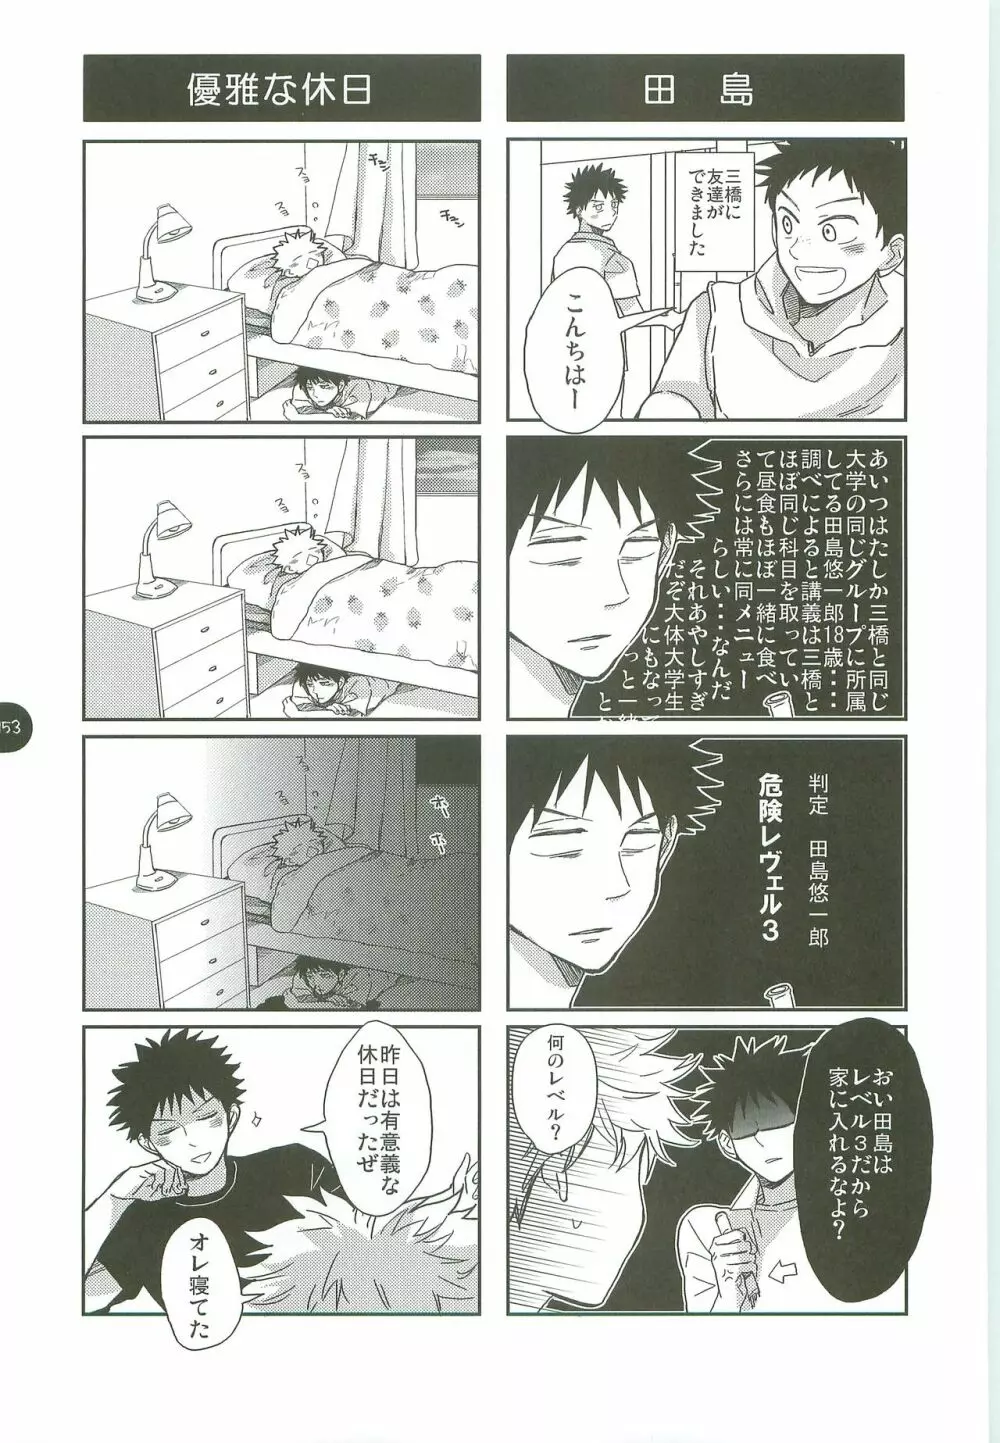 あ部屋のまとめ - page152